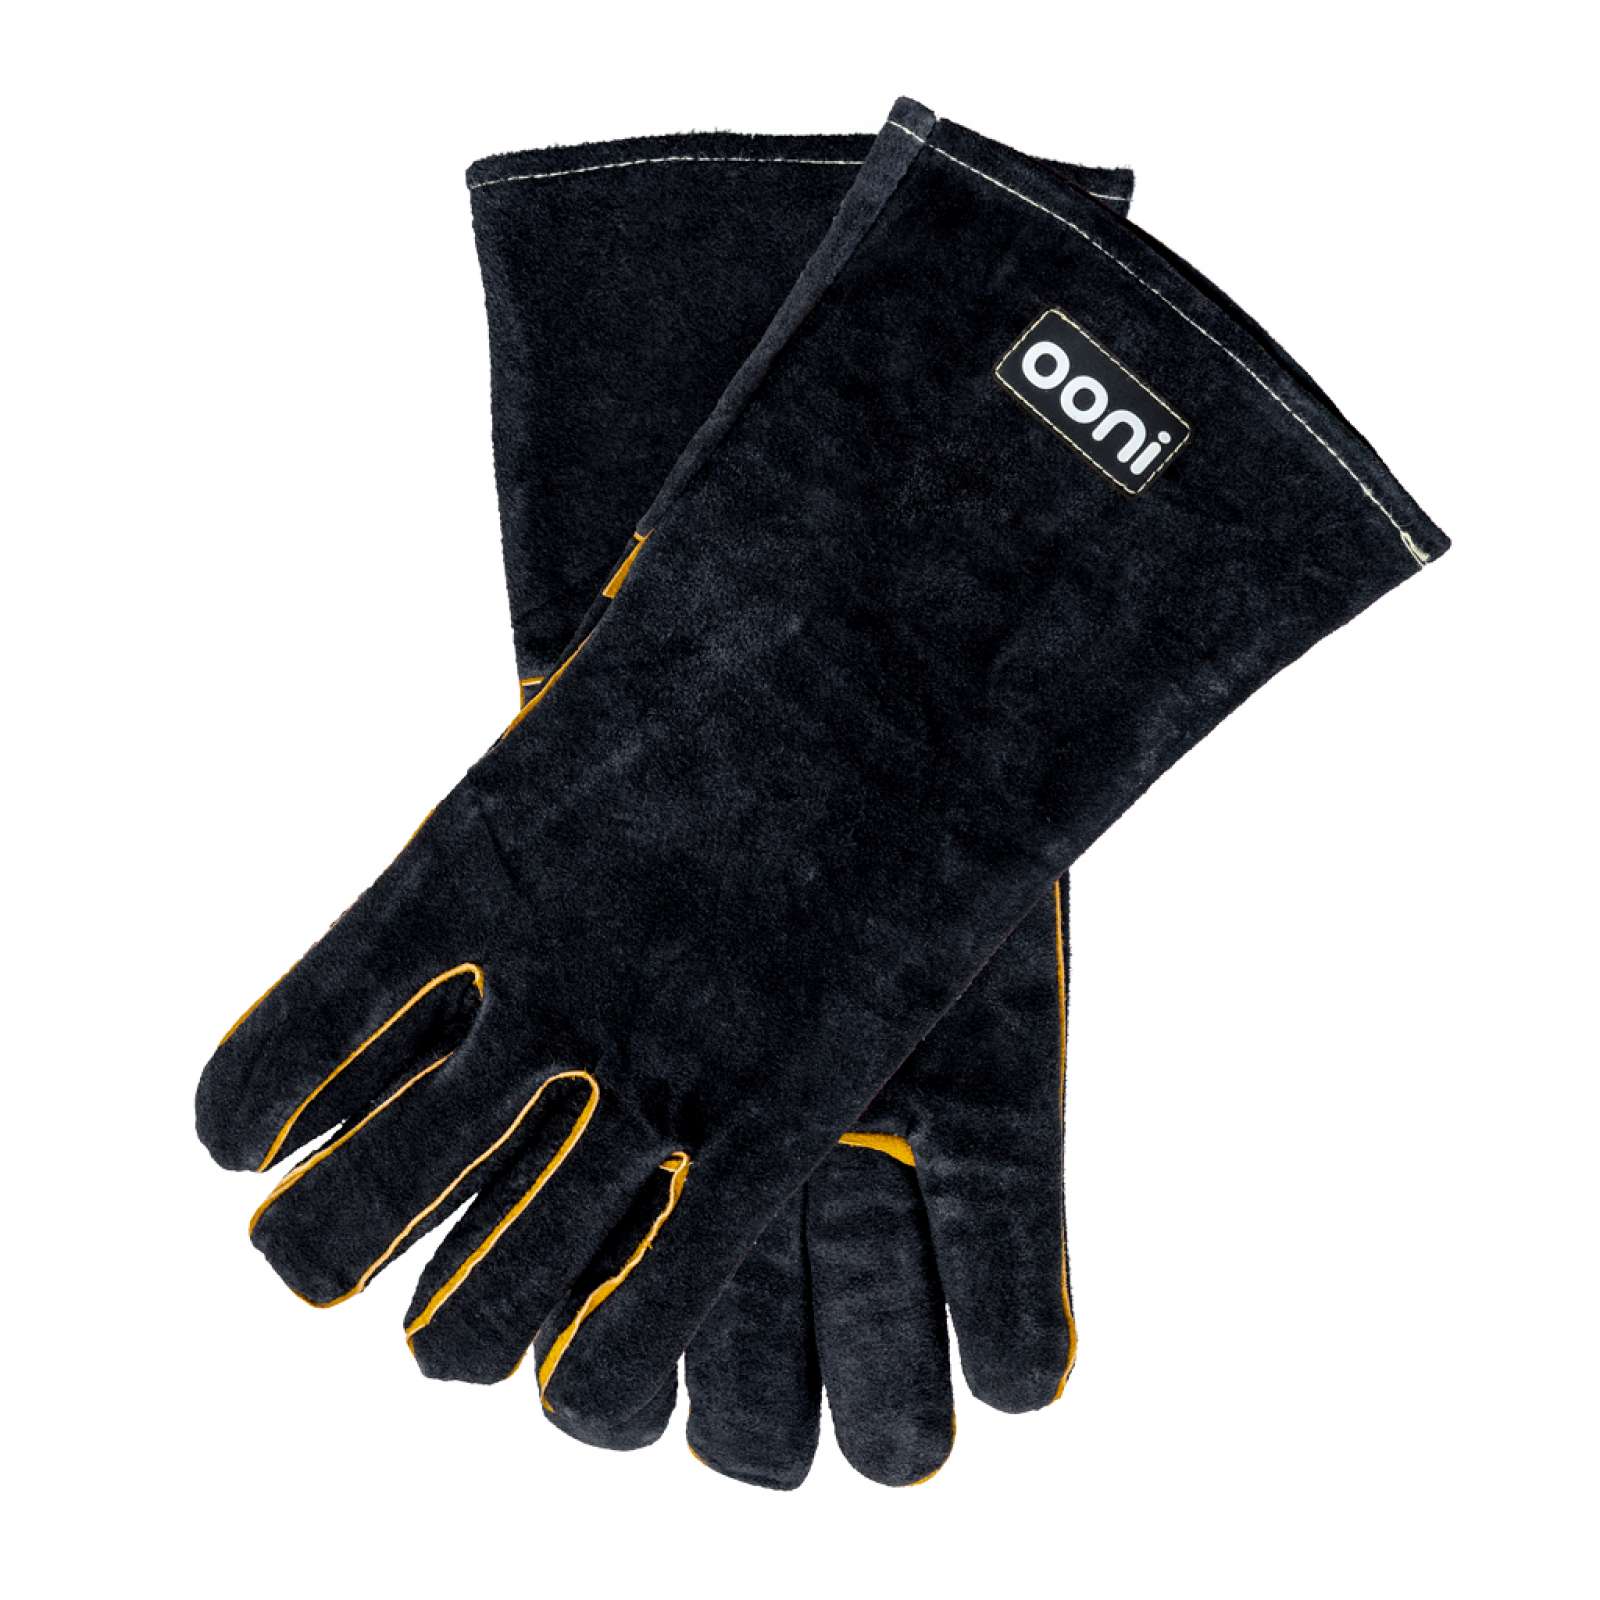 Ooni hitzebeständige Handschuhe aus Leder für hervorragenden Hitzeschutz